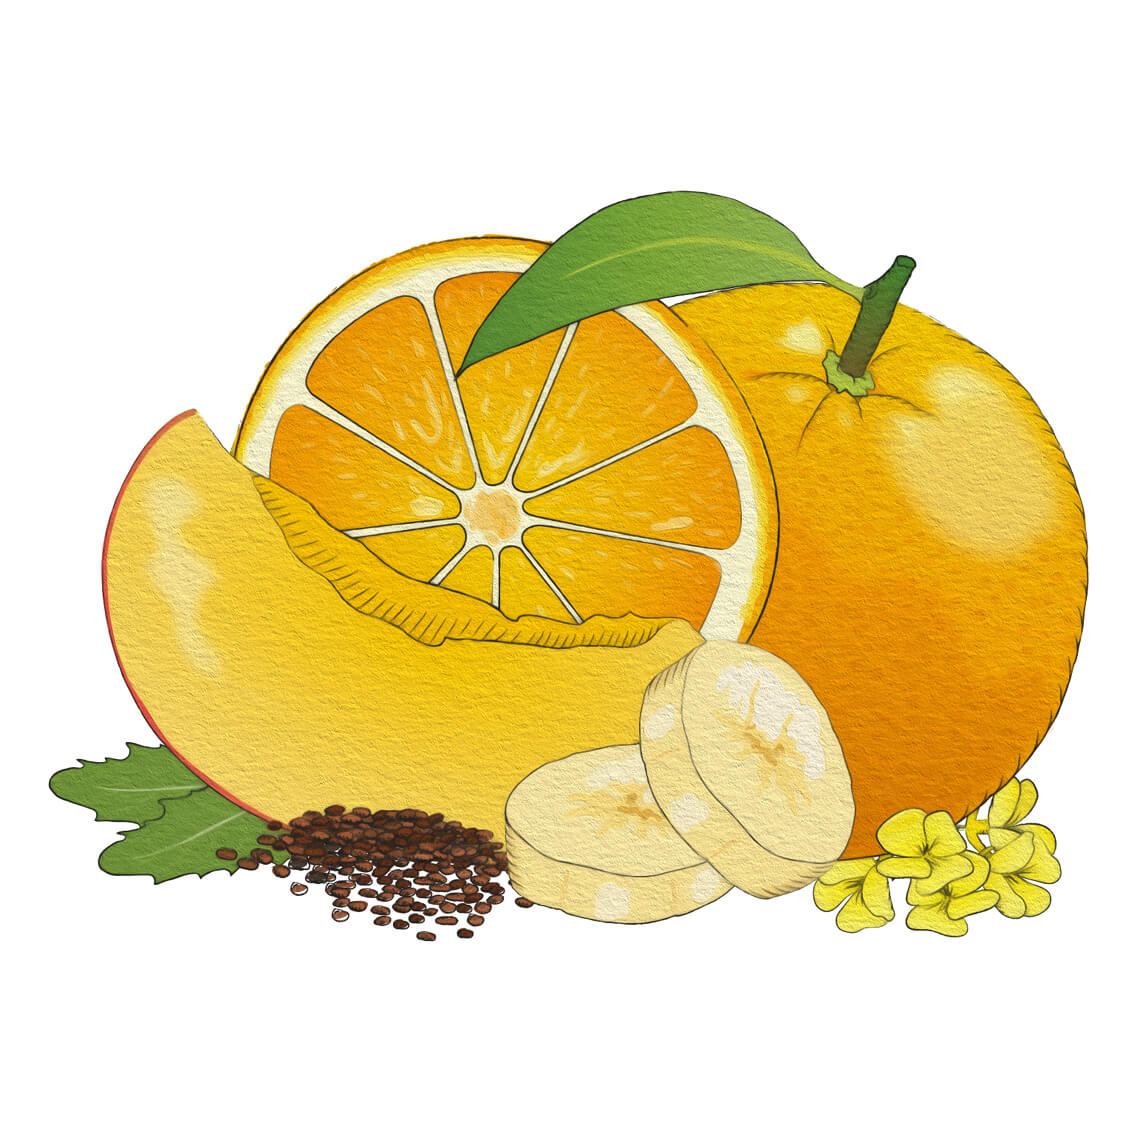 Beskrivning: En hälsosam Apelsin- & quinoasmoothie från alexphilfood med frukt som innehåller omega 3-fettsyror och frön.